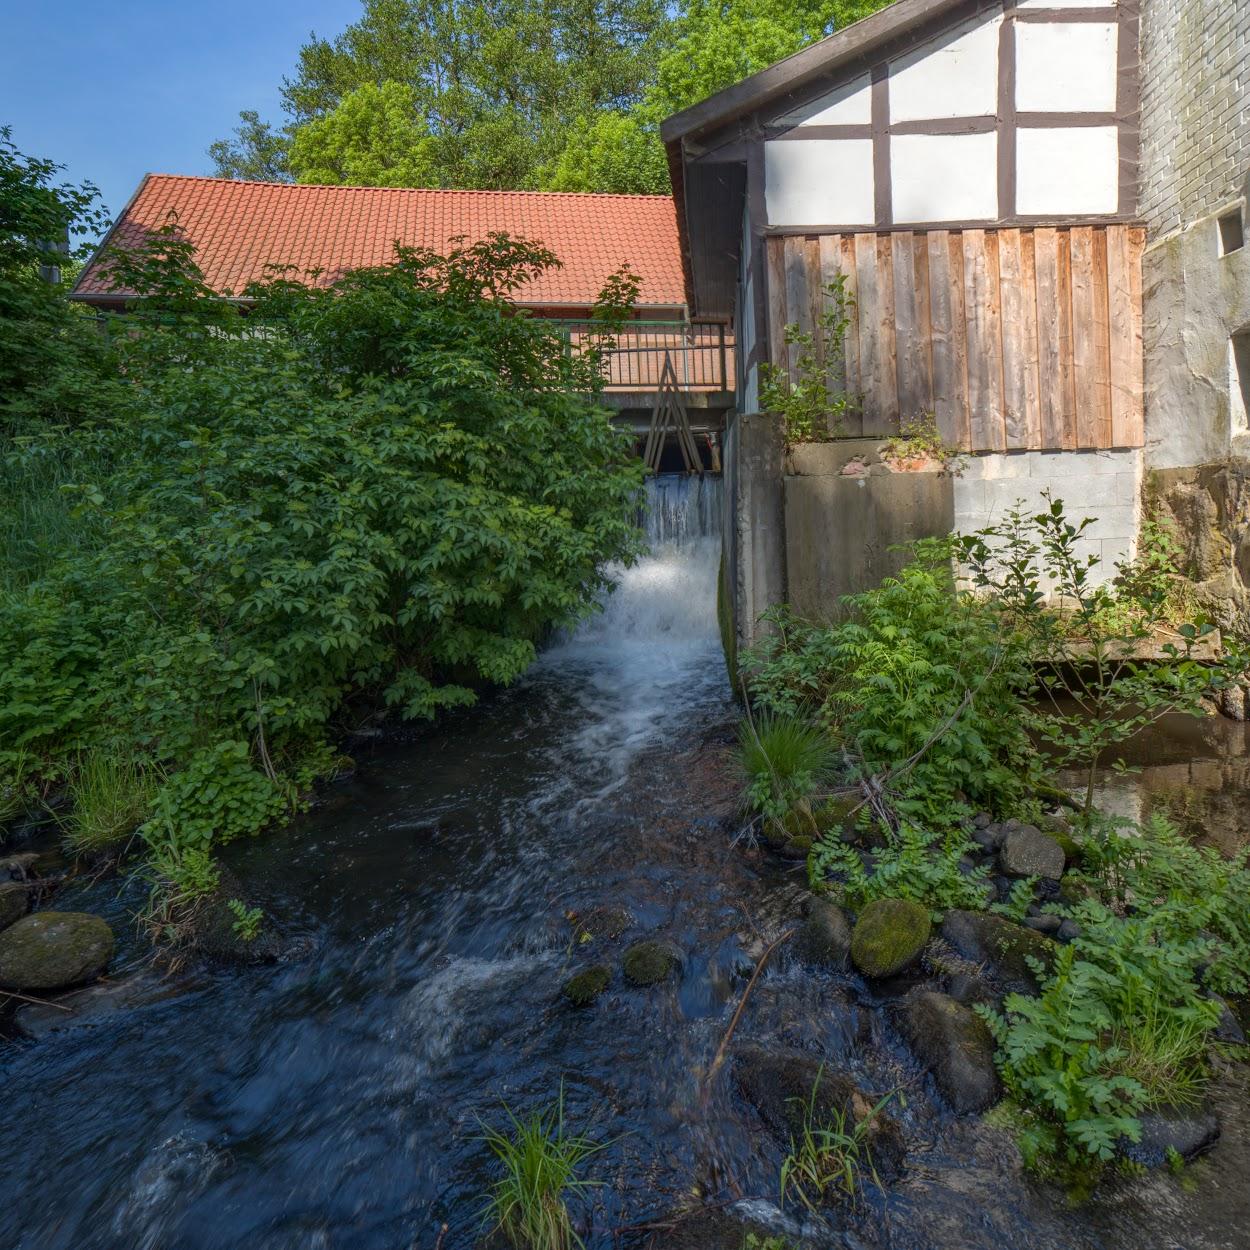 Restaurant "Ferienhaus Wassermühle" in Schnega